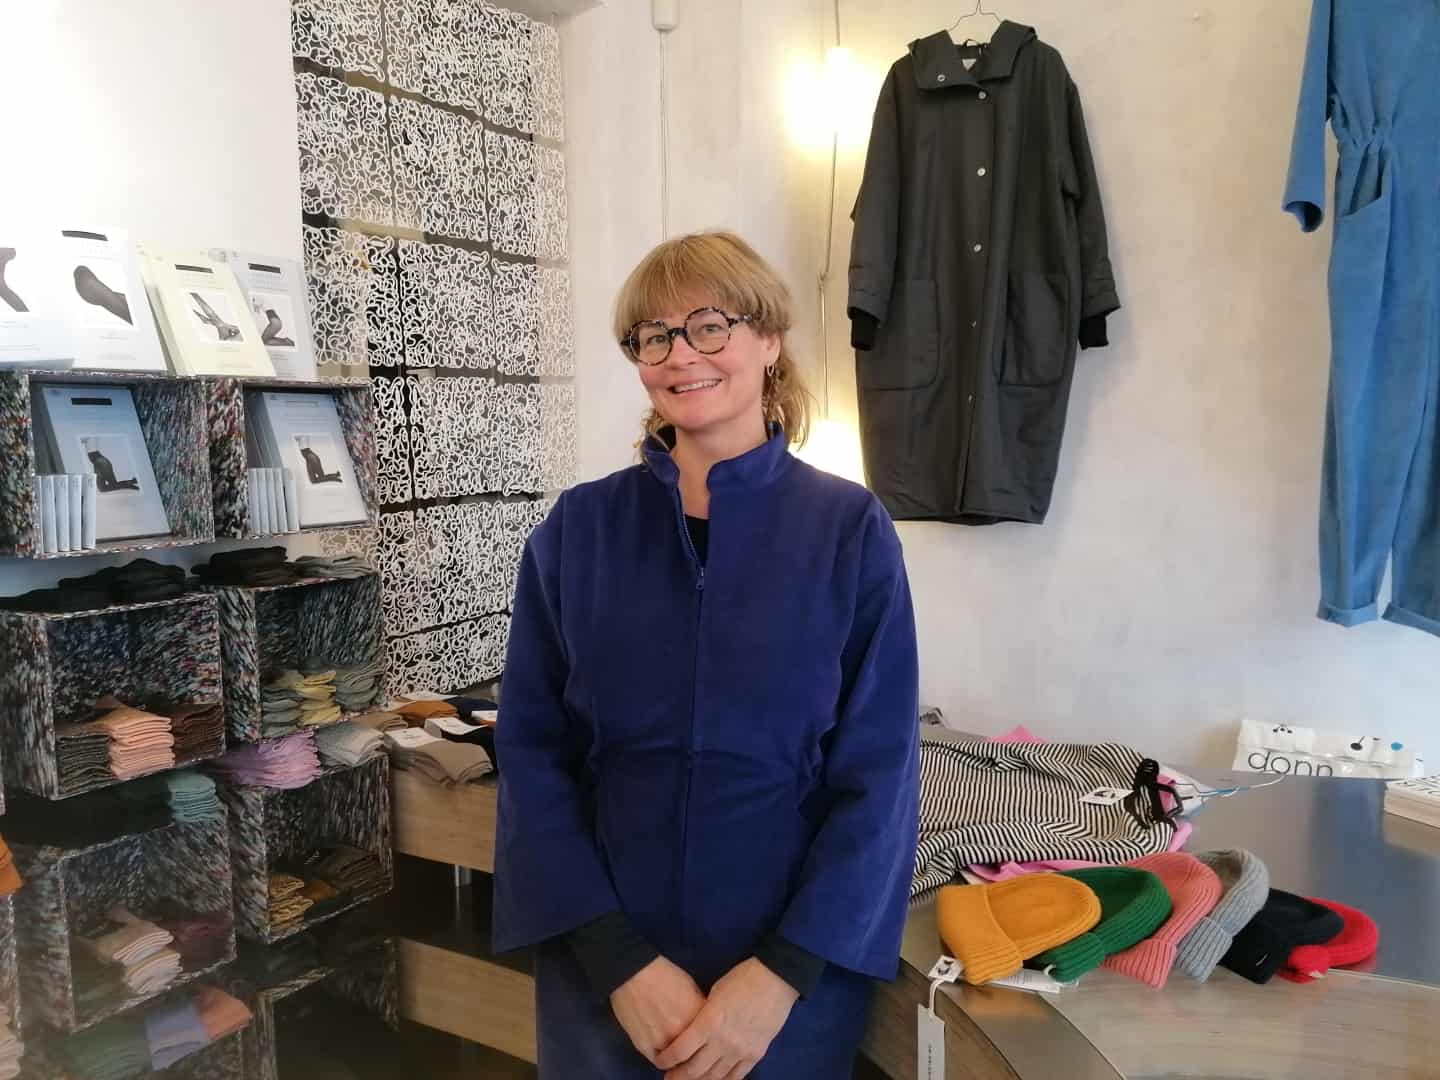 lokal tøjbutik er Friday det nye sort: - Vi vil ikke bidrage til overforbrug kobenhavnliv.dk